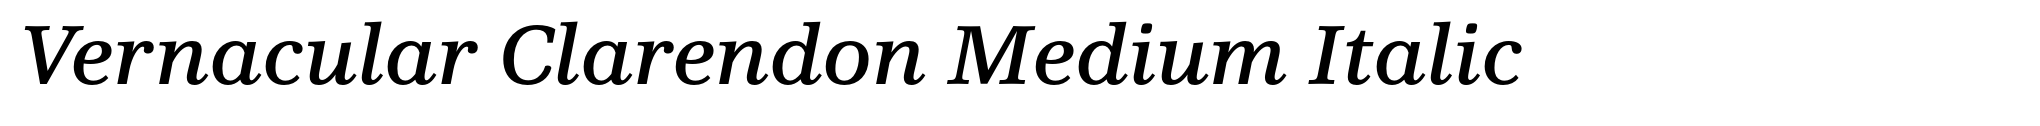 Vernacular Clarendon Medium Italic image